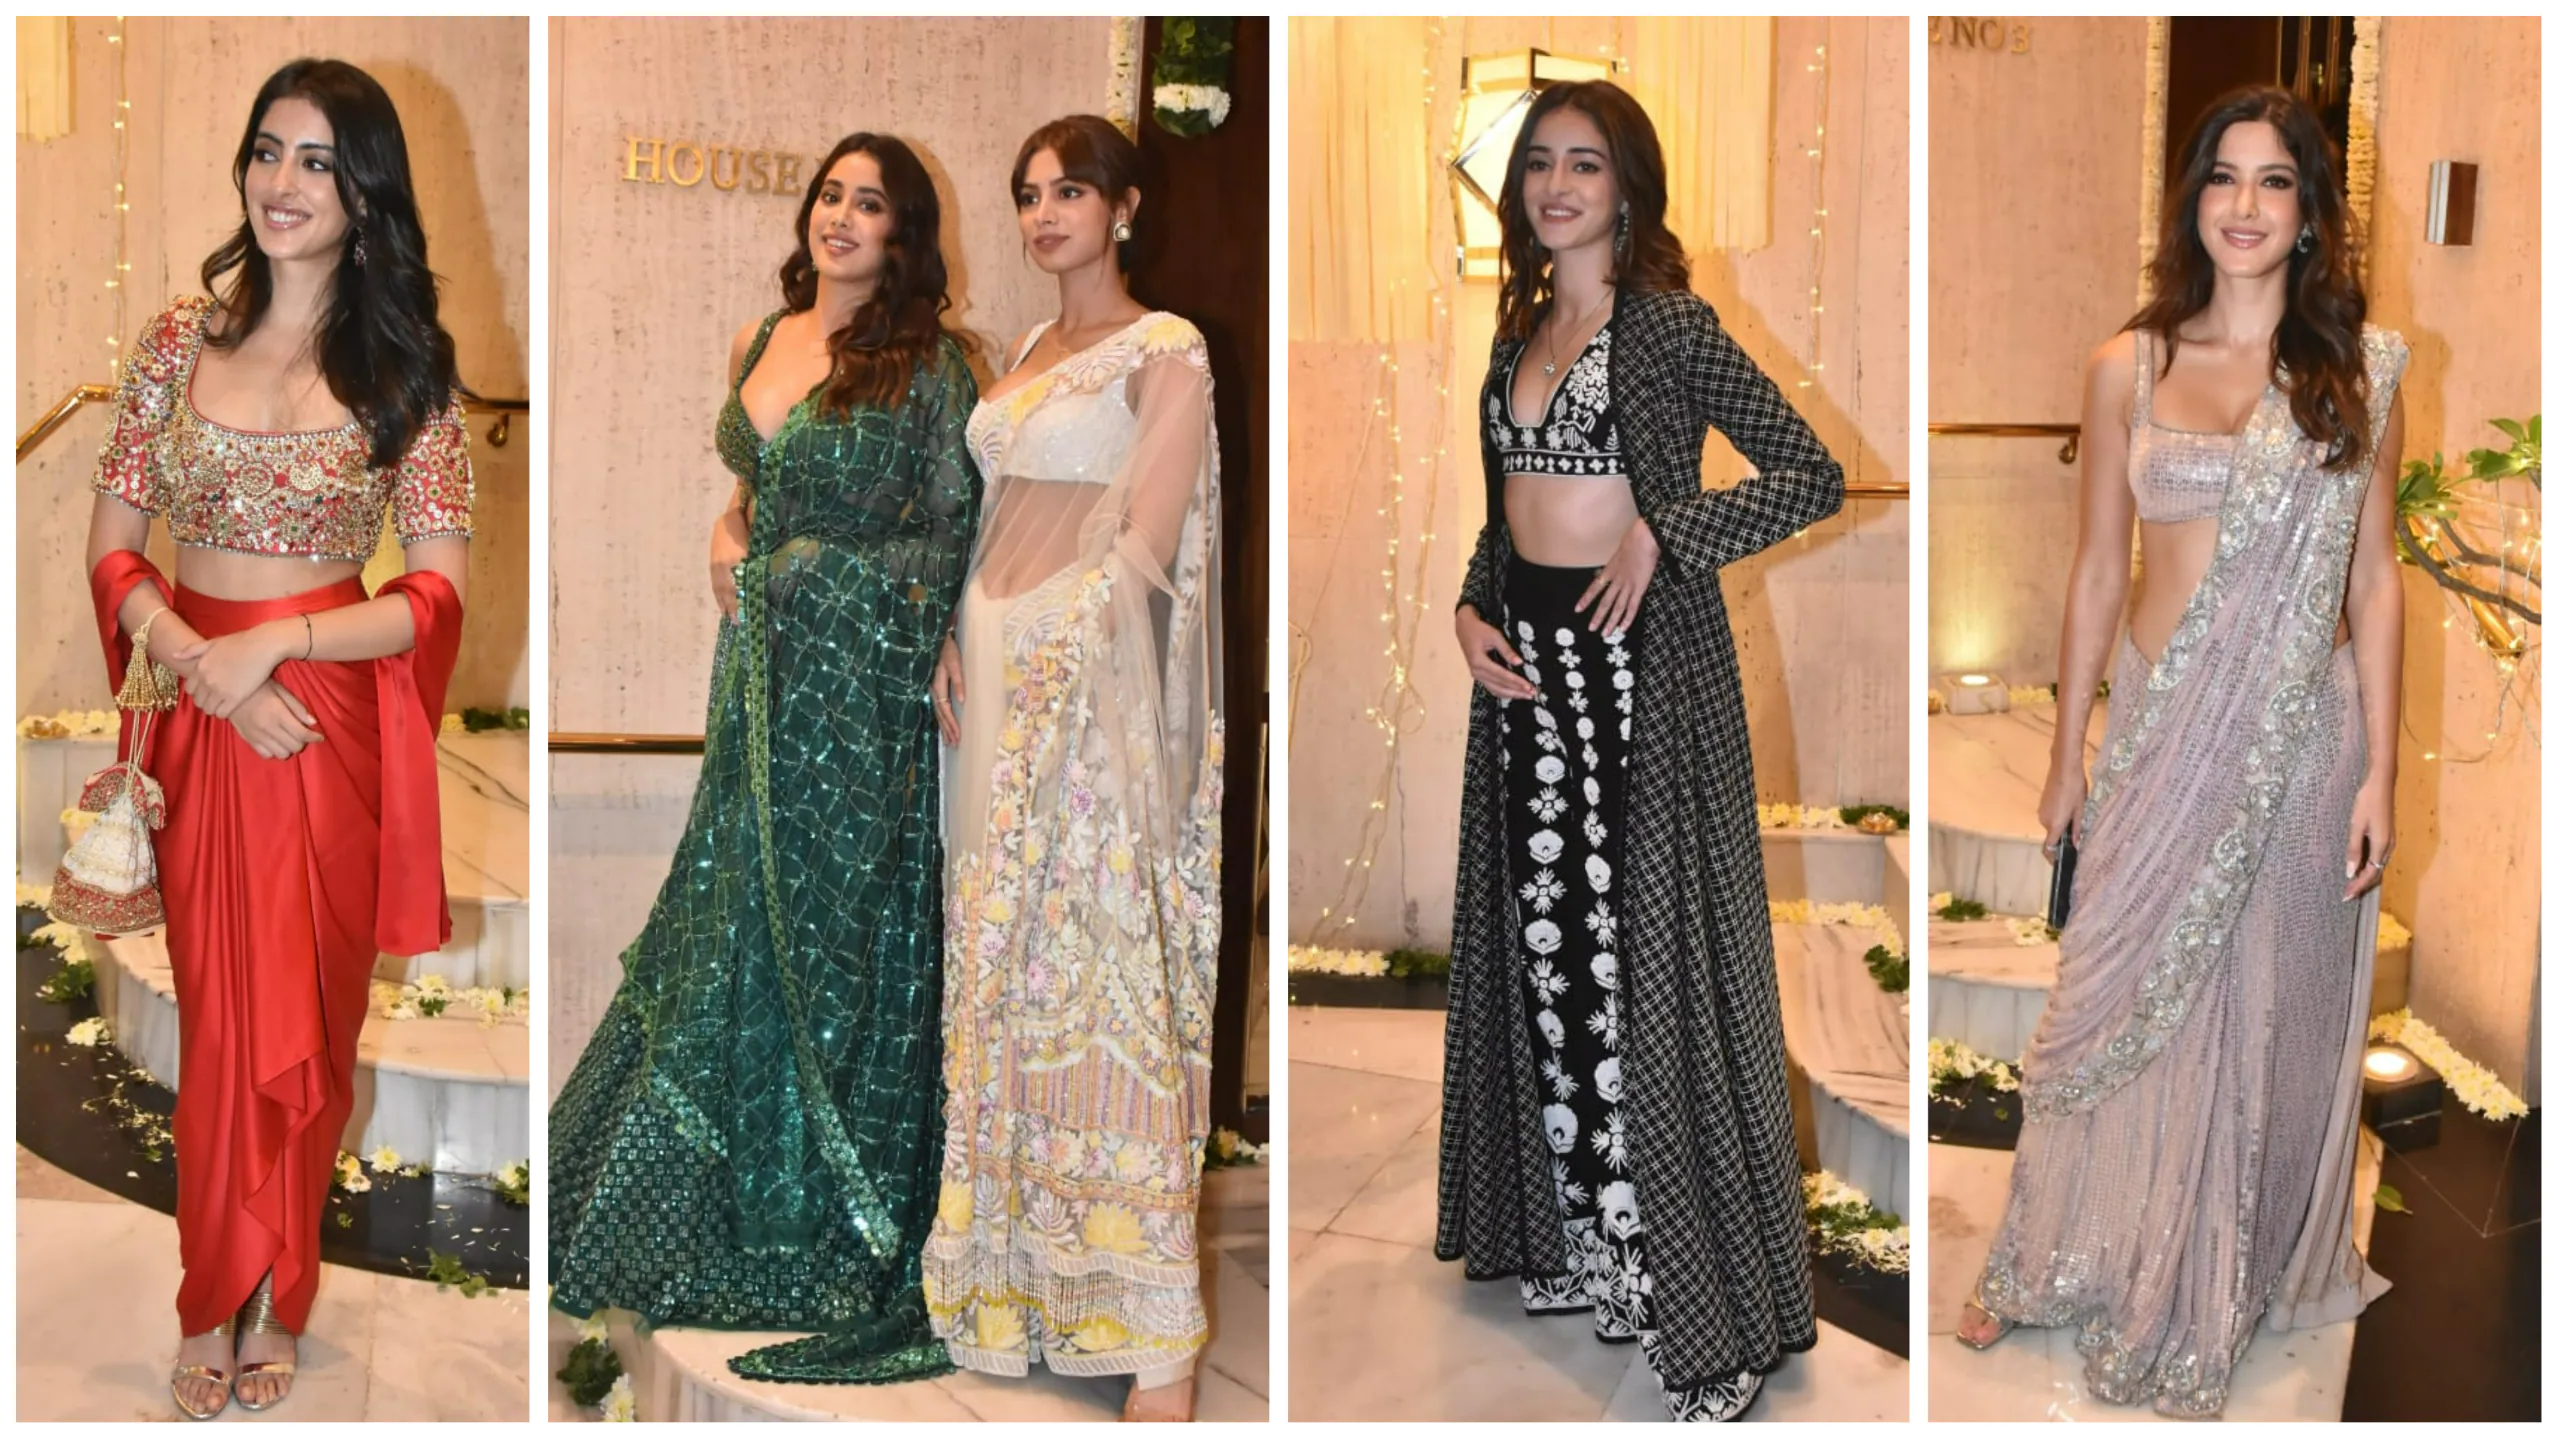 Suhana Khan 'looks like Deepika Padukone' in saree at Manish Malhotra Diwali bash; joins BFFs Navya Nanda, Khushi Kapoor